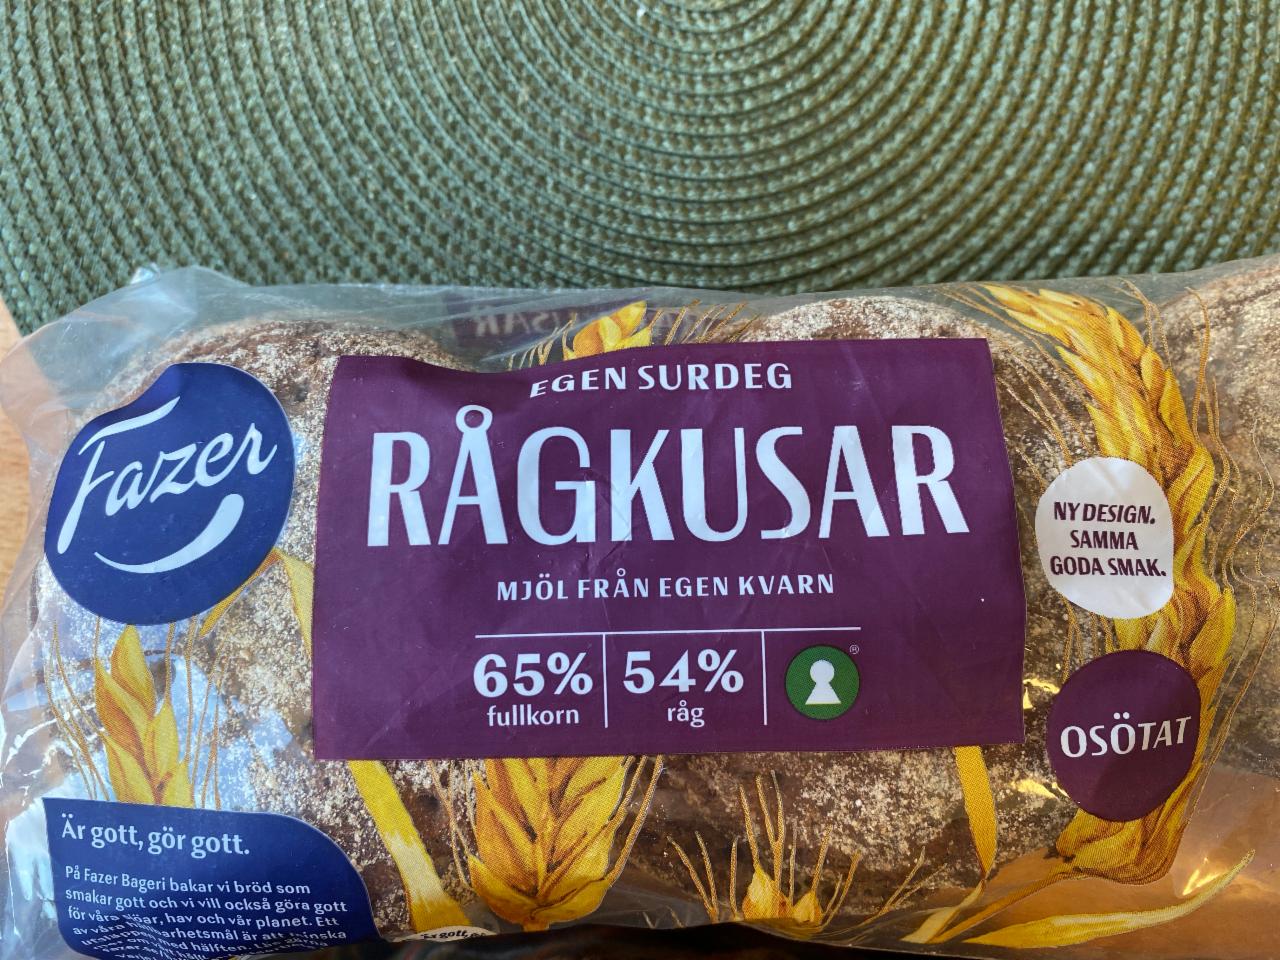 Фото - Хлеб цельнозерновой ржаной Ragkusar Fazer